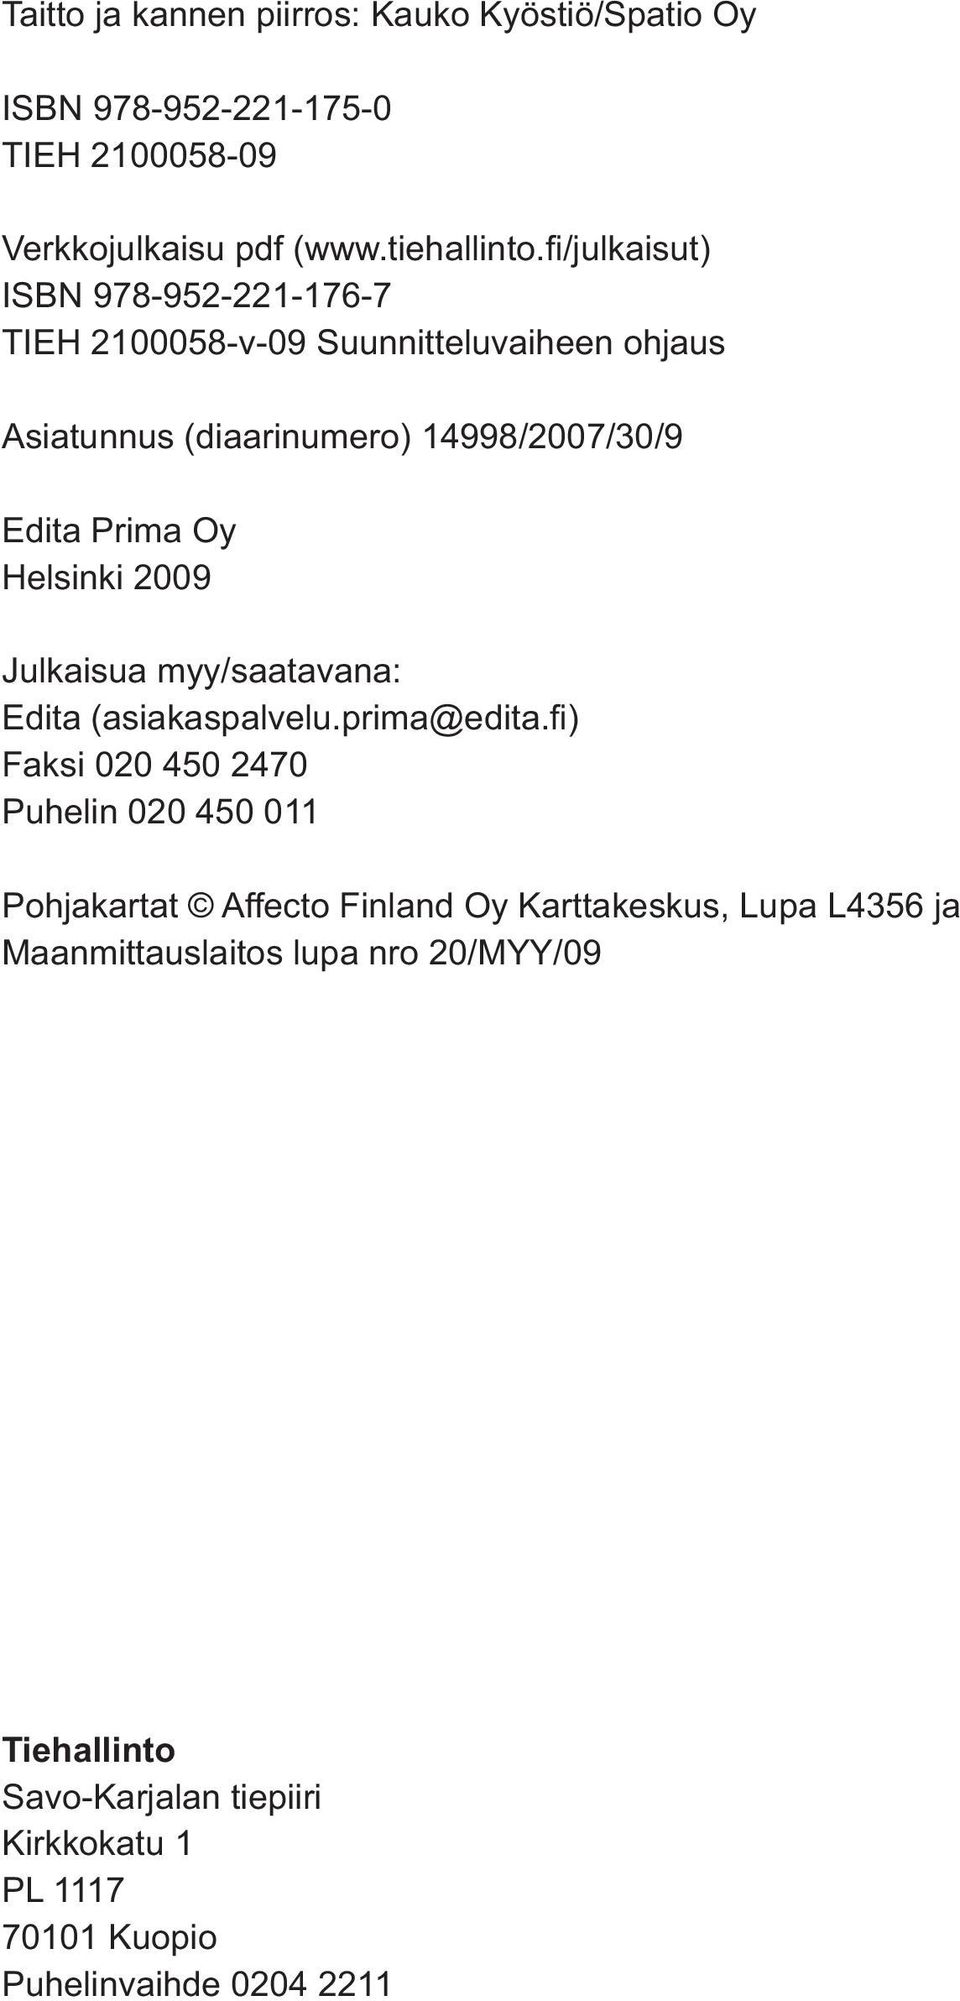 /julkaisut) ISBN 978-952-221-176-7 TIEH 2100058-v-09 Suunnitteluvaiheen ohjaus Asiatunnus (diaarinumero) 14998/2007/30/9 Edita Prima Oy Helsinki 2009